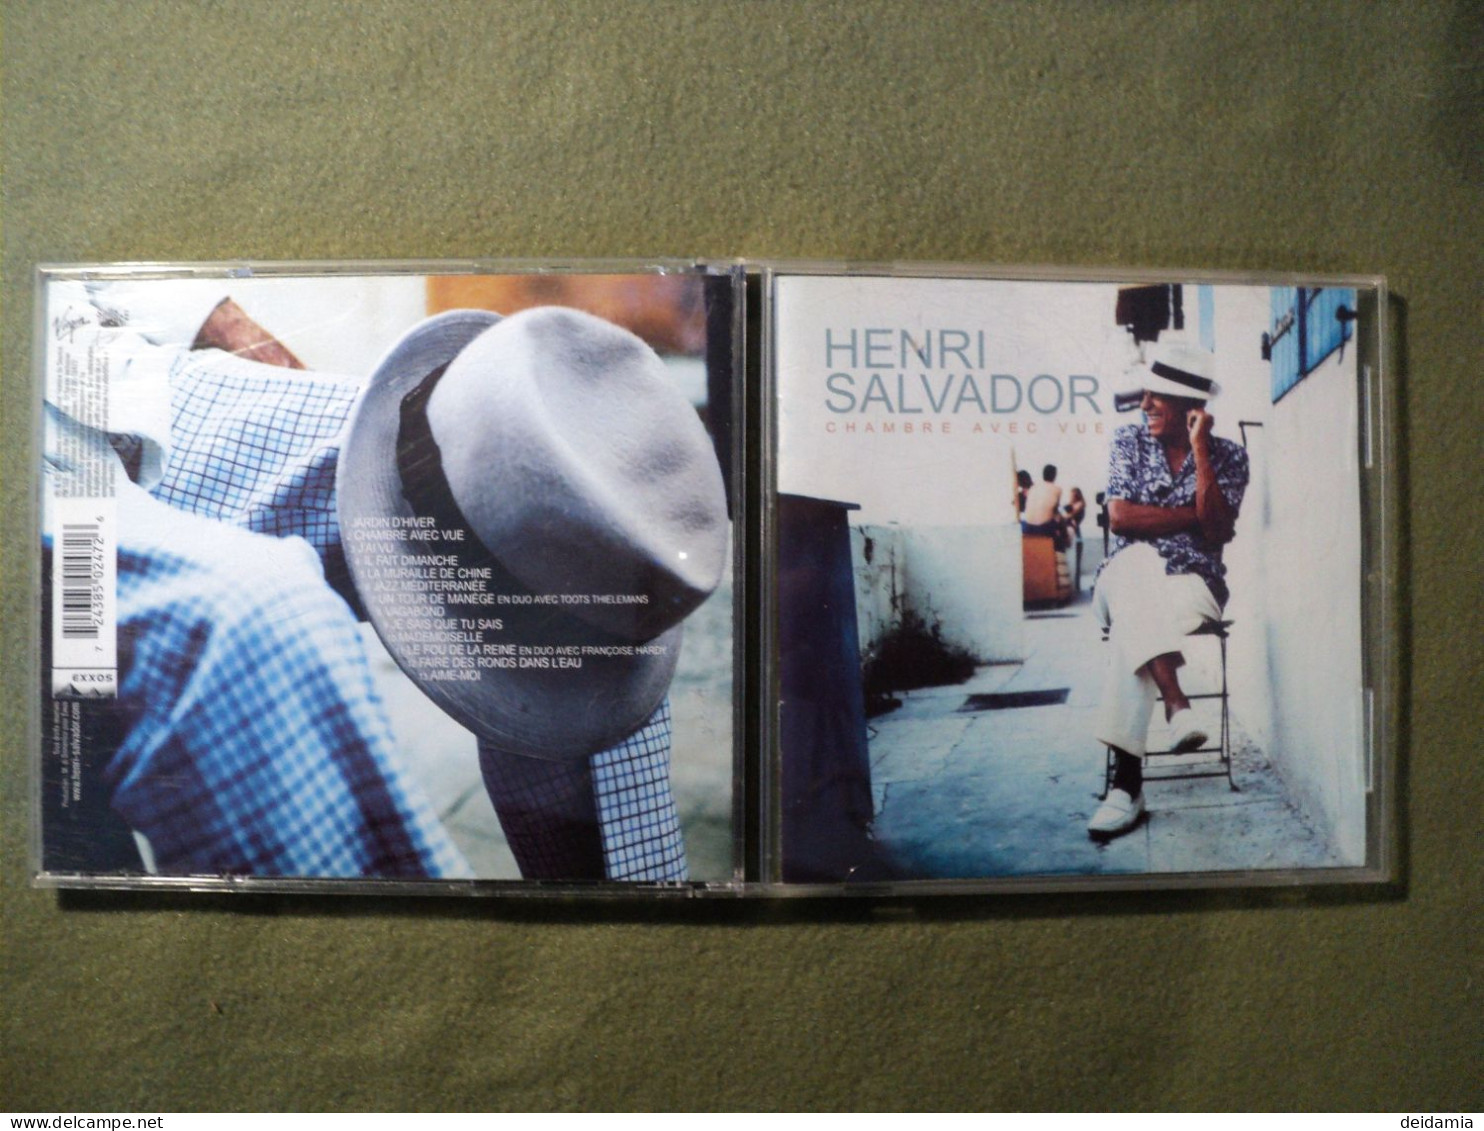 HENRI SALVADOR. CD 13 TITRES DE 2000. CHAMBRE AVEC VUE. 724385 02472 6 JARDIN D HIVER / CHAMBRE AVEC VUE / J AI VU / IL - Autres - Musique Française